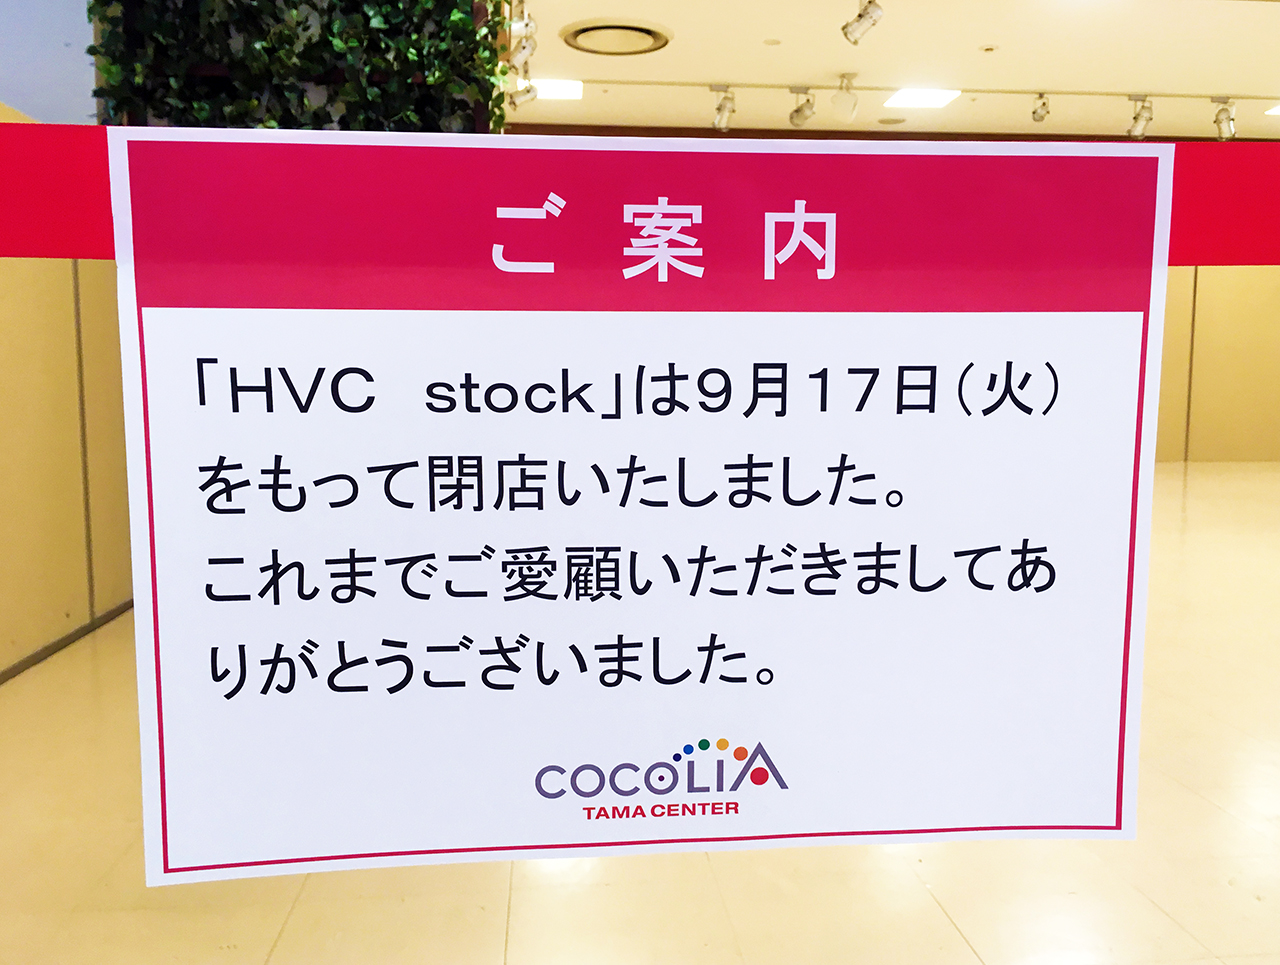 ココリア多摩センターのHVC stock閉店